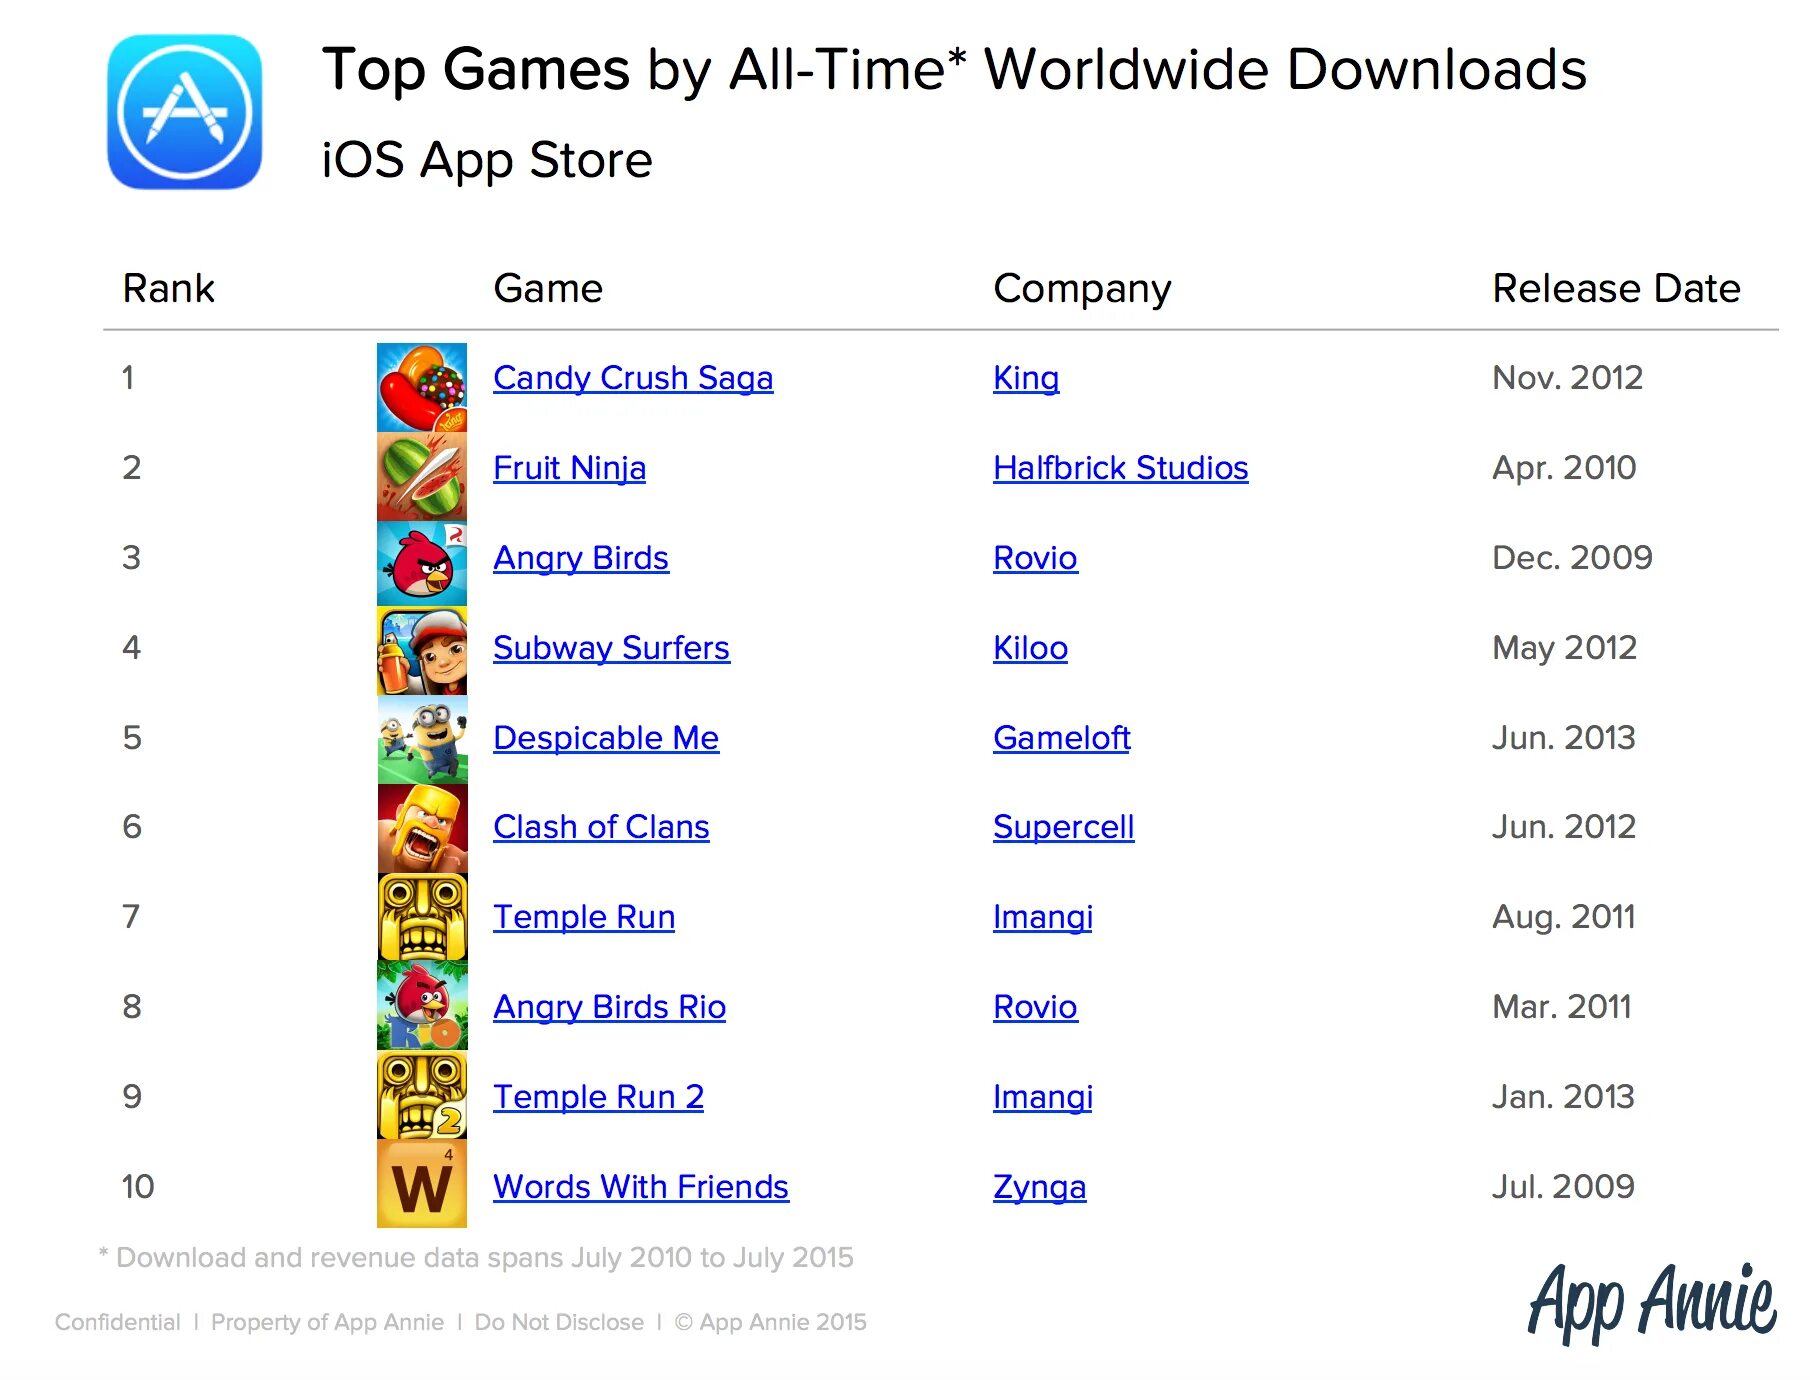 Ranking игра. Список самых популярных игр. Популярные игры список. Список самых популярных мобильных игр. Какая игра на 1 месте.